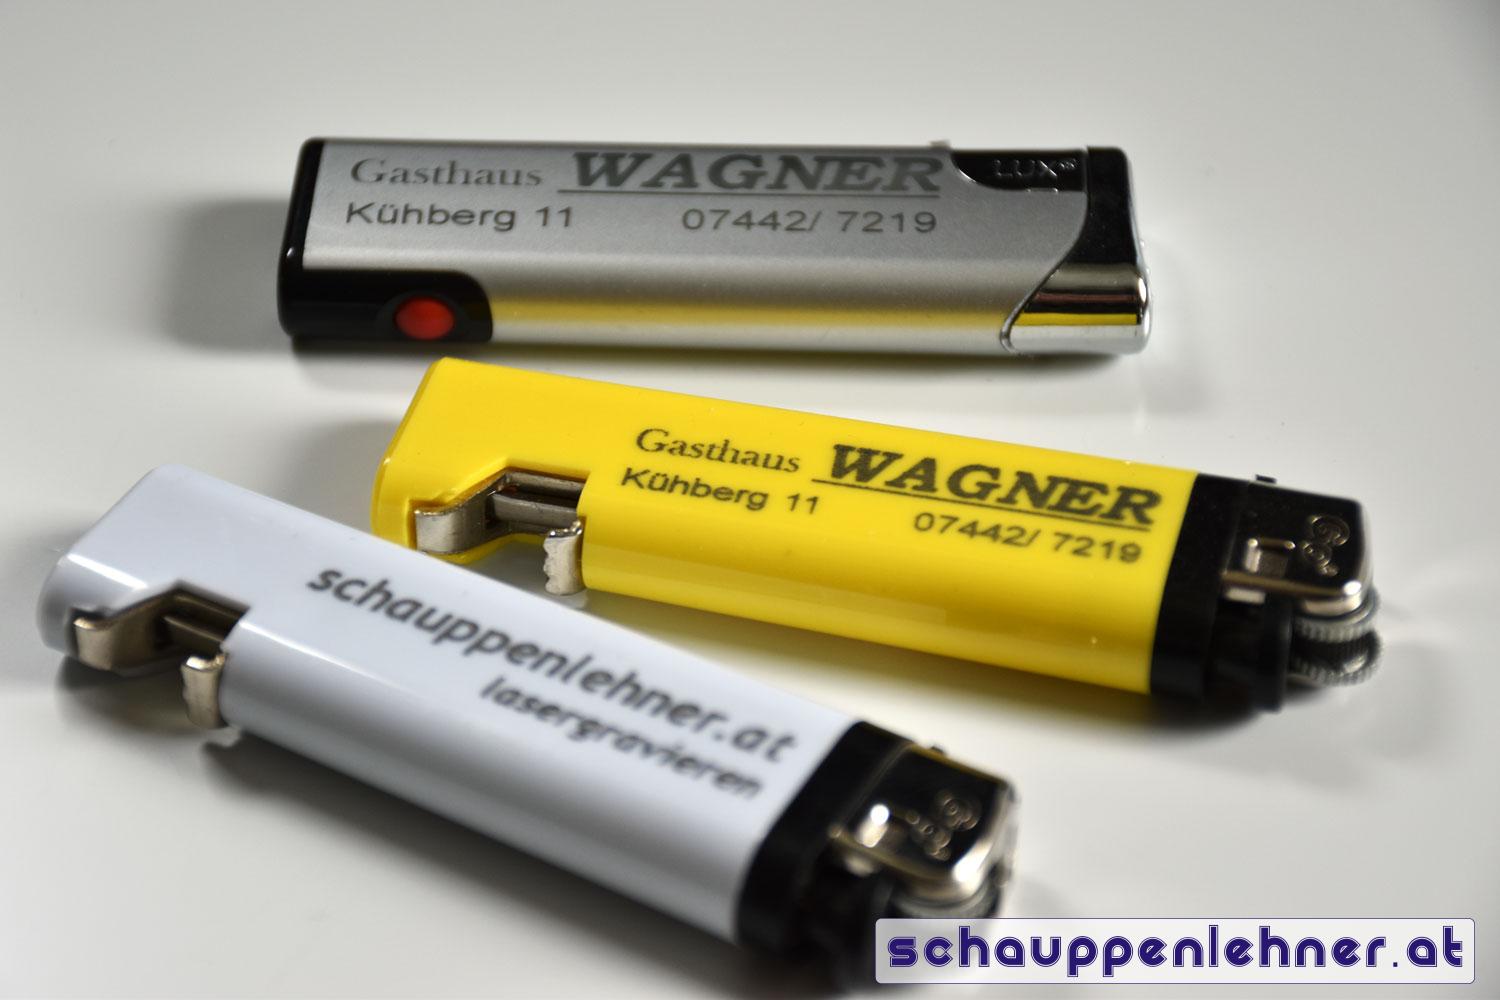 Gravierte Feuerzeuge mit Logo und Kontaktdaten für das Gasthaus Wagner